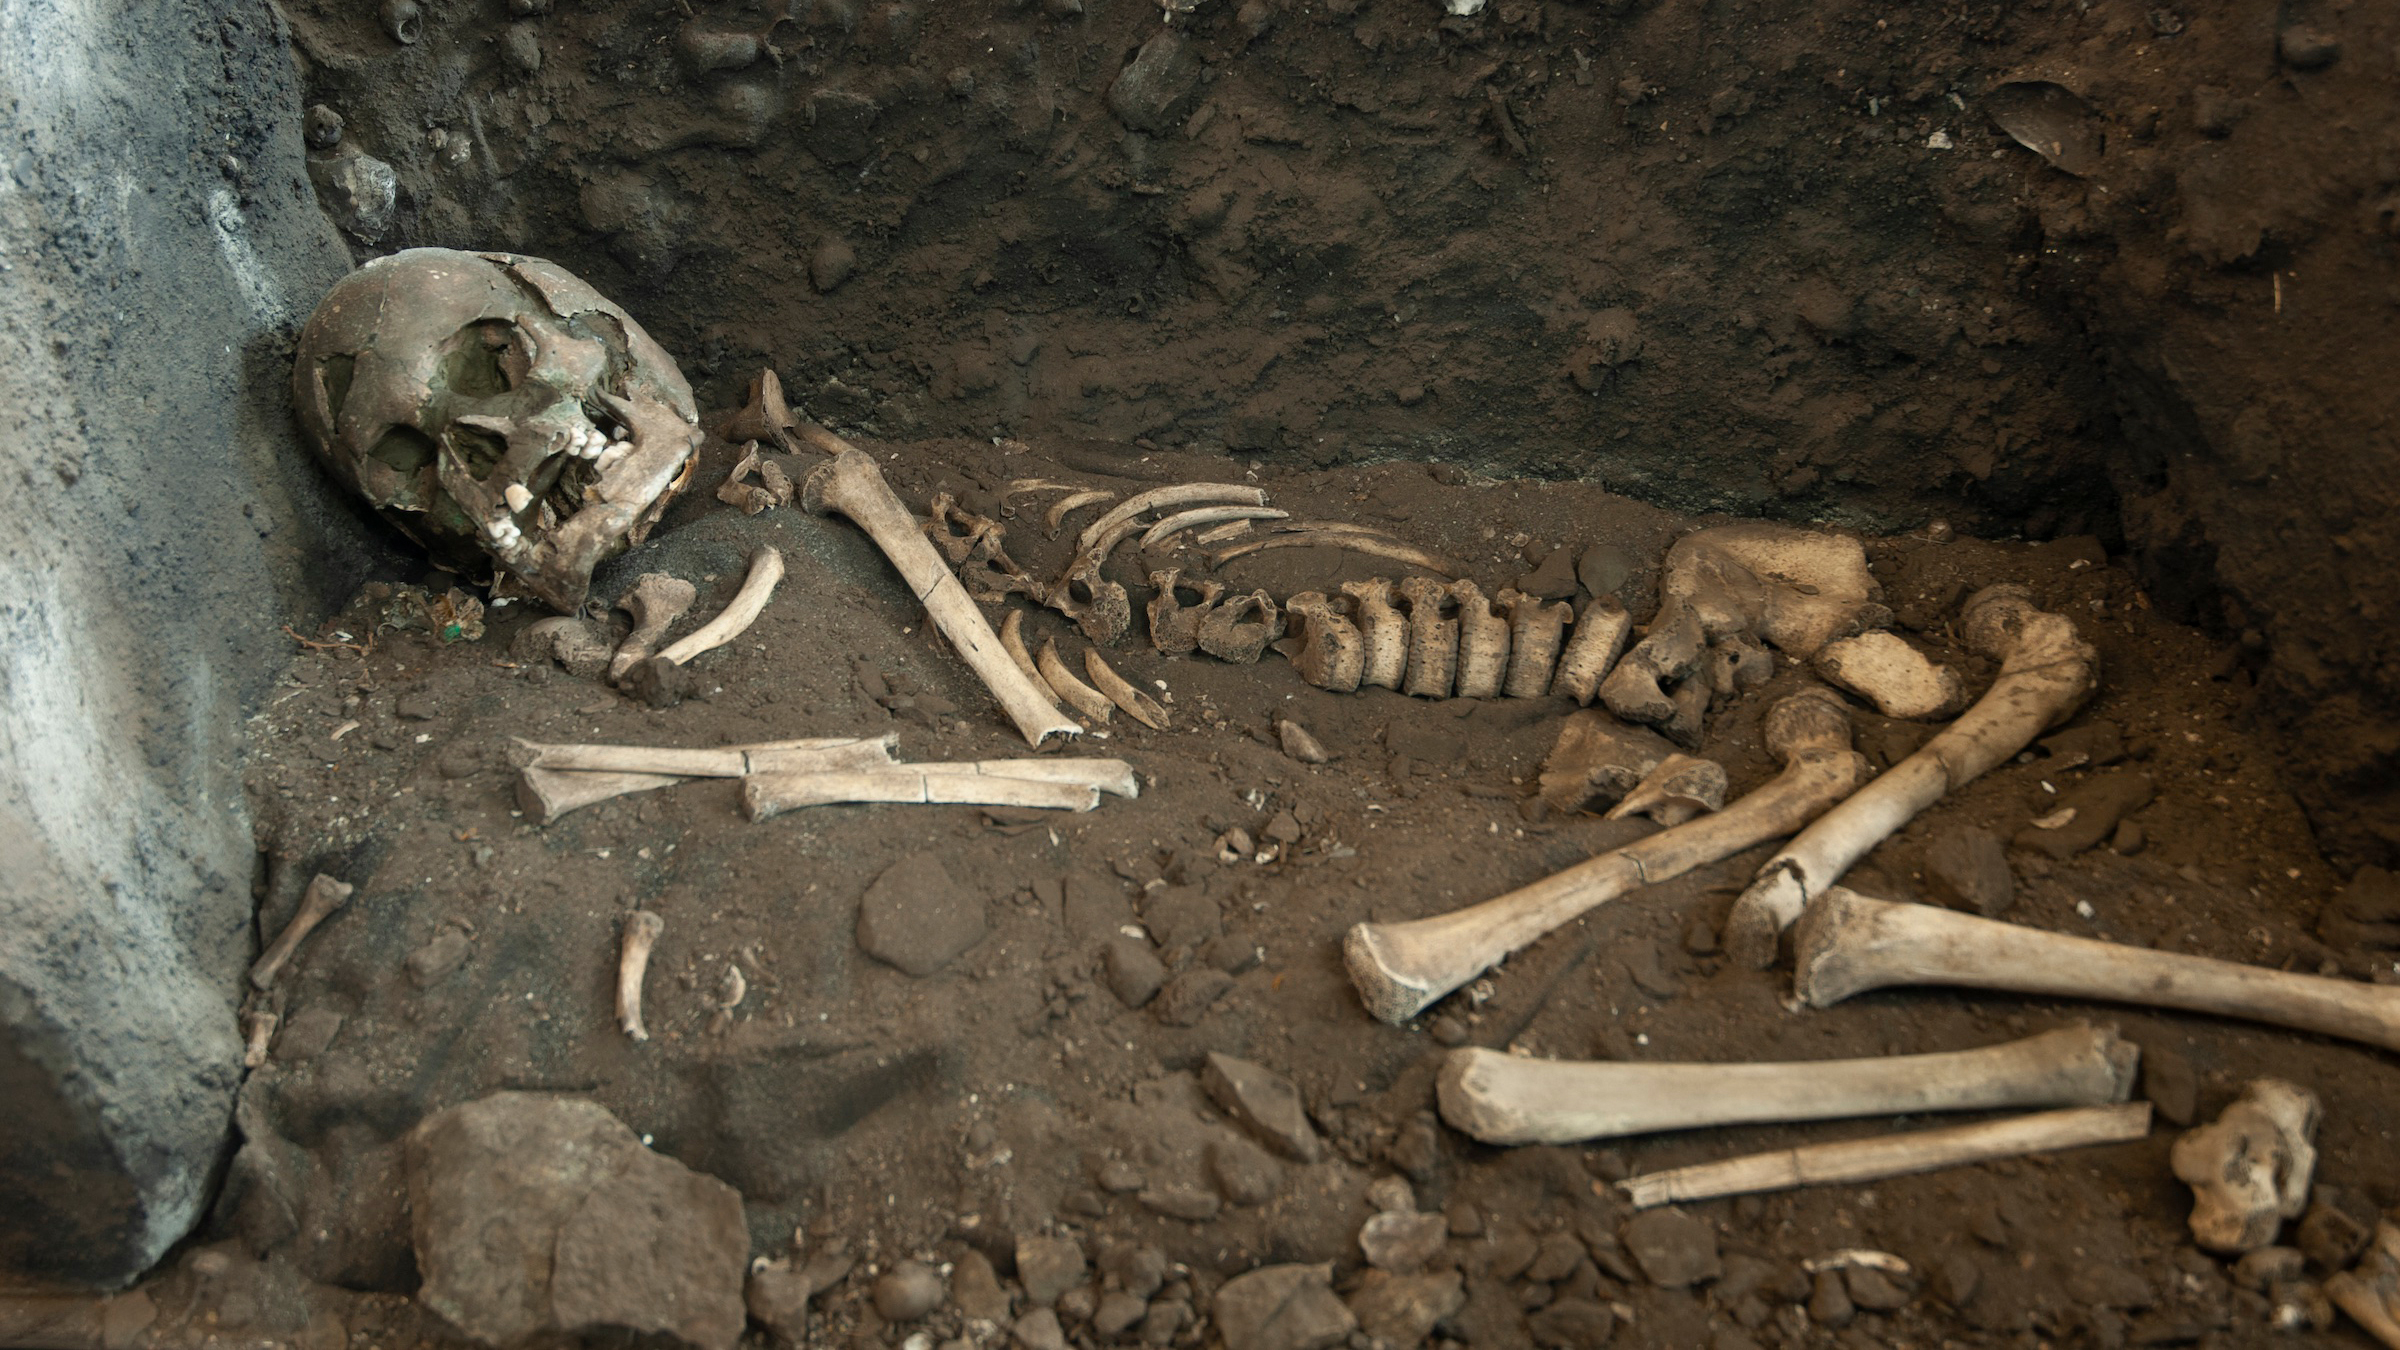 Nous voyons un squelette sur le côté, dans une position quelque peu accroupie sur le sol en terre battue près d'un mur de grotte.